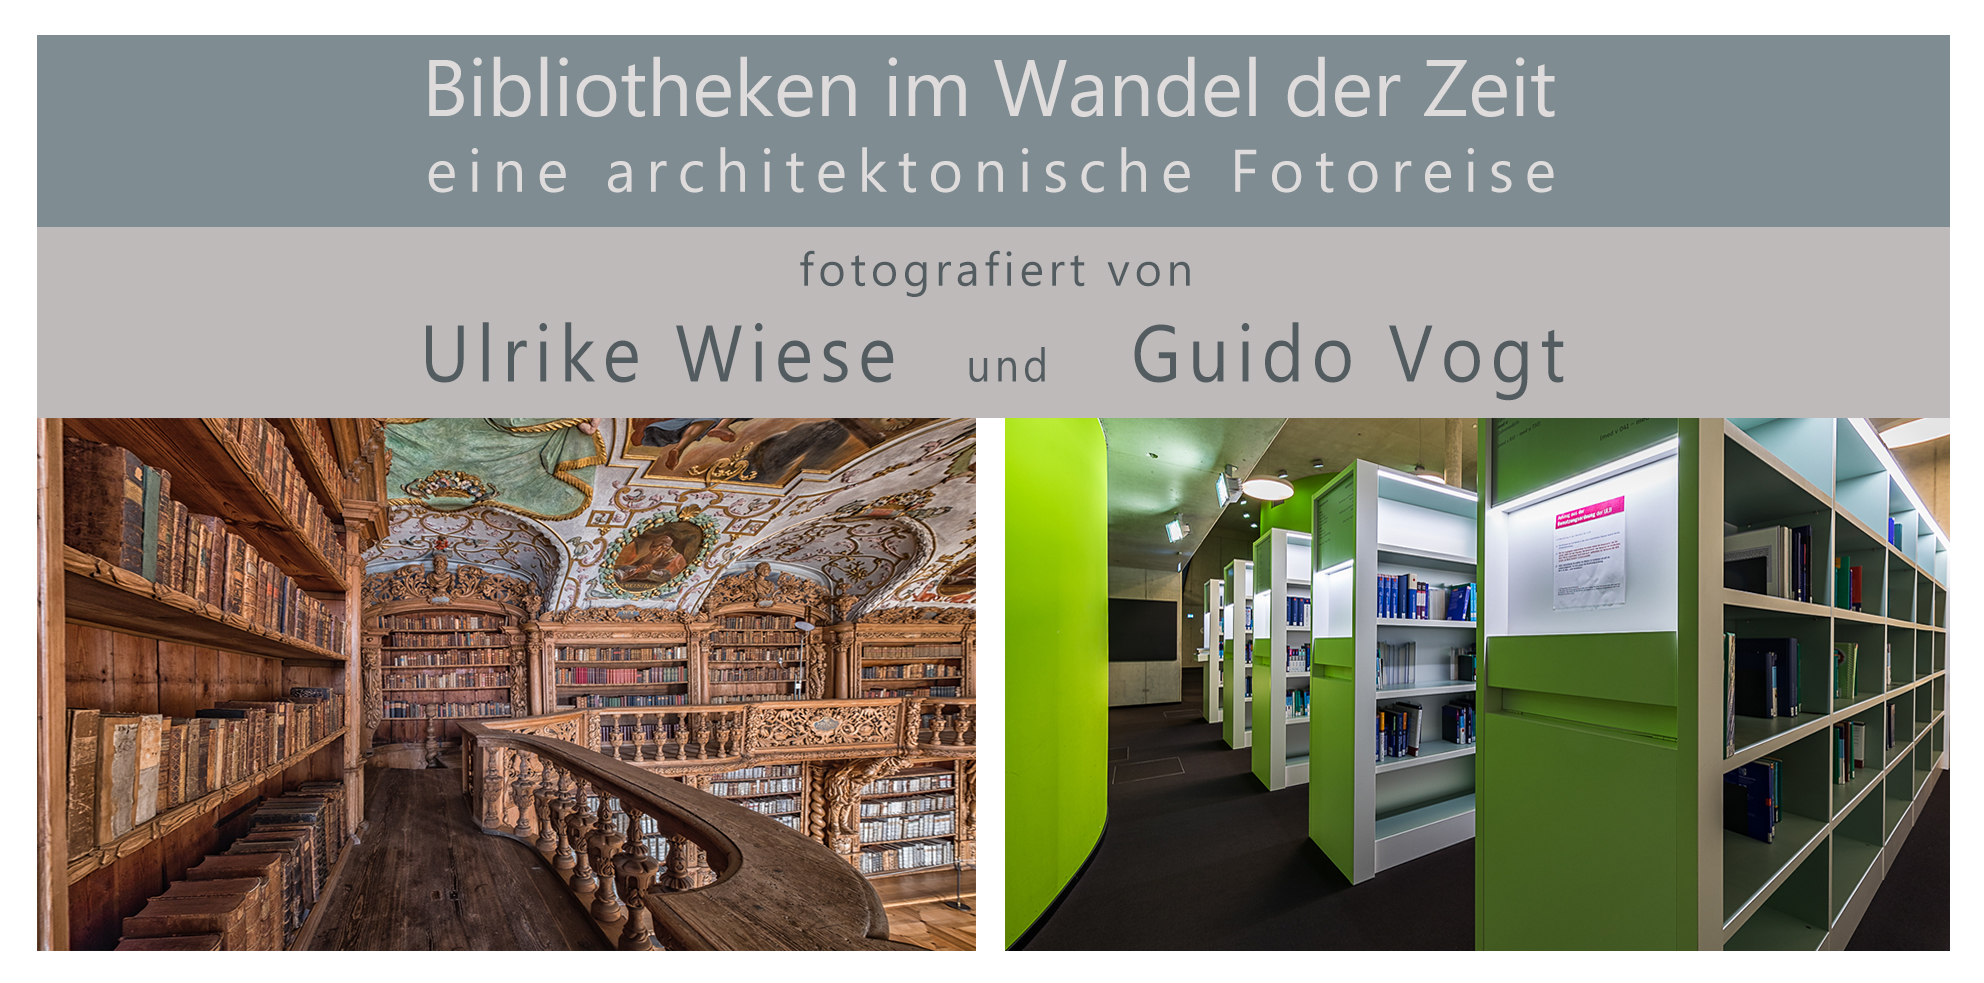 Bibliotheken im Wandel der Zeit - eine architektonische Fotoreise von Ulrike Wiese und Guido Vogt